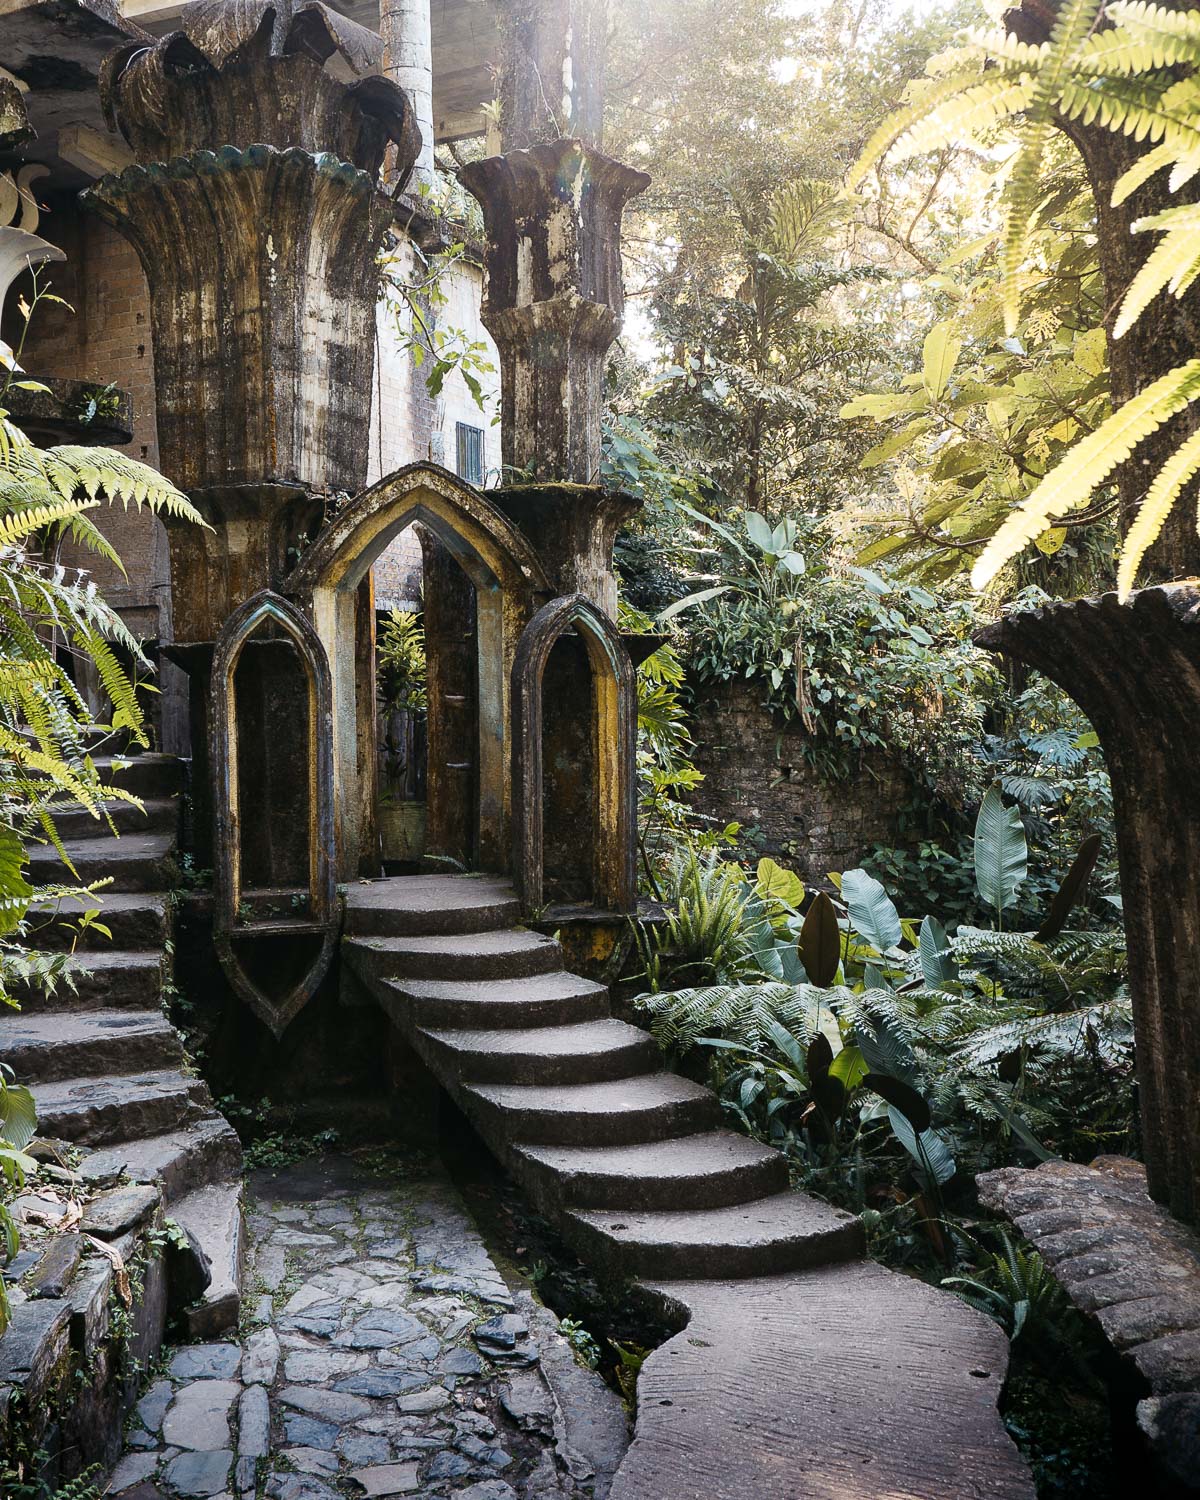 Le jardin surréaliste d'Edward James, des structures surréalistes au milieu de la jungle